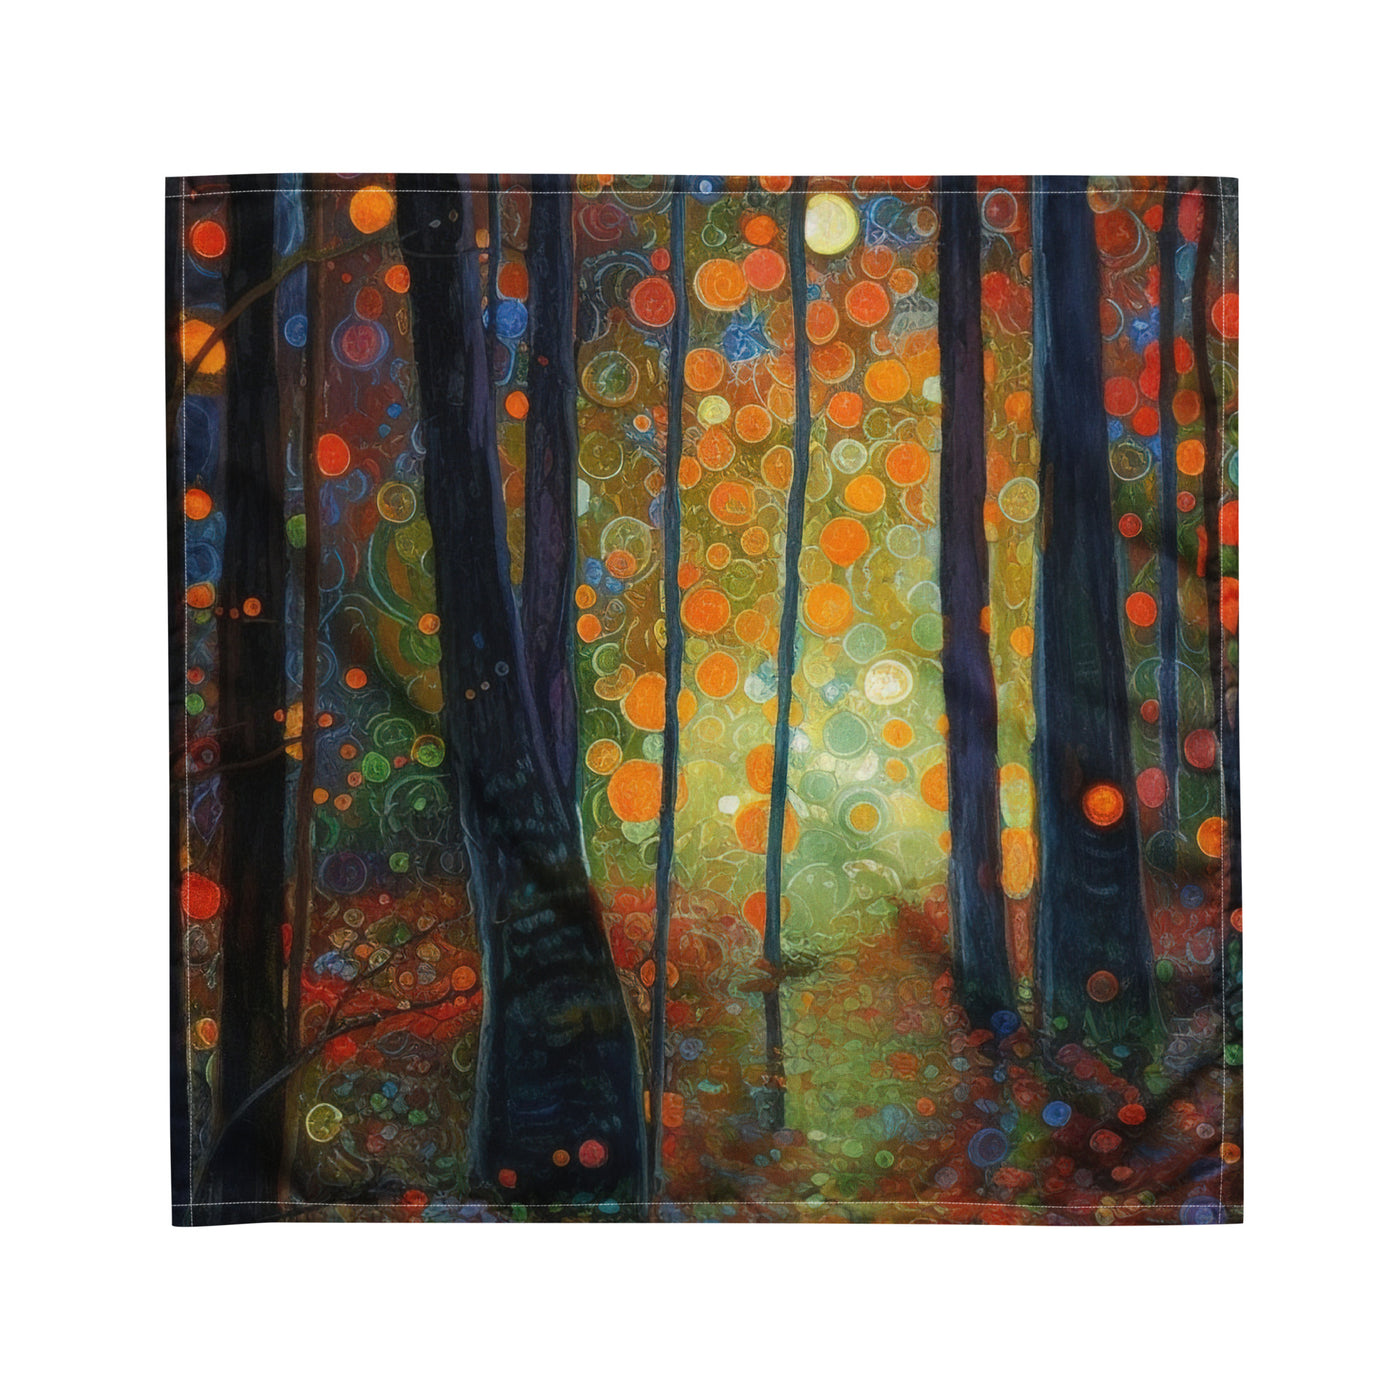 Wald voller Bäume - Herbstliche Stimmung - Malerei - Bandana (All-Over Print) camping xxx M